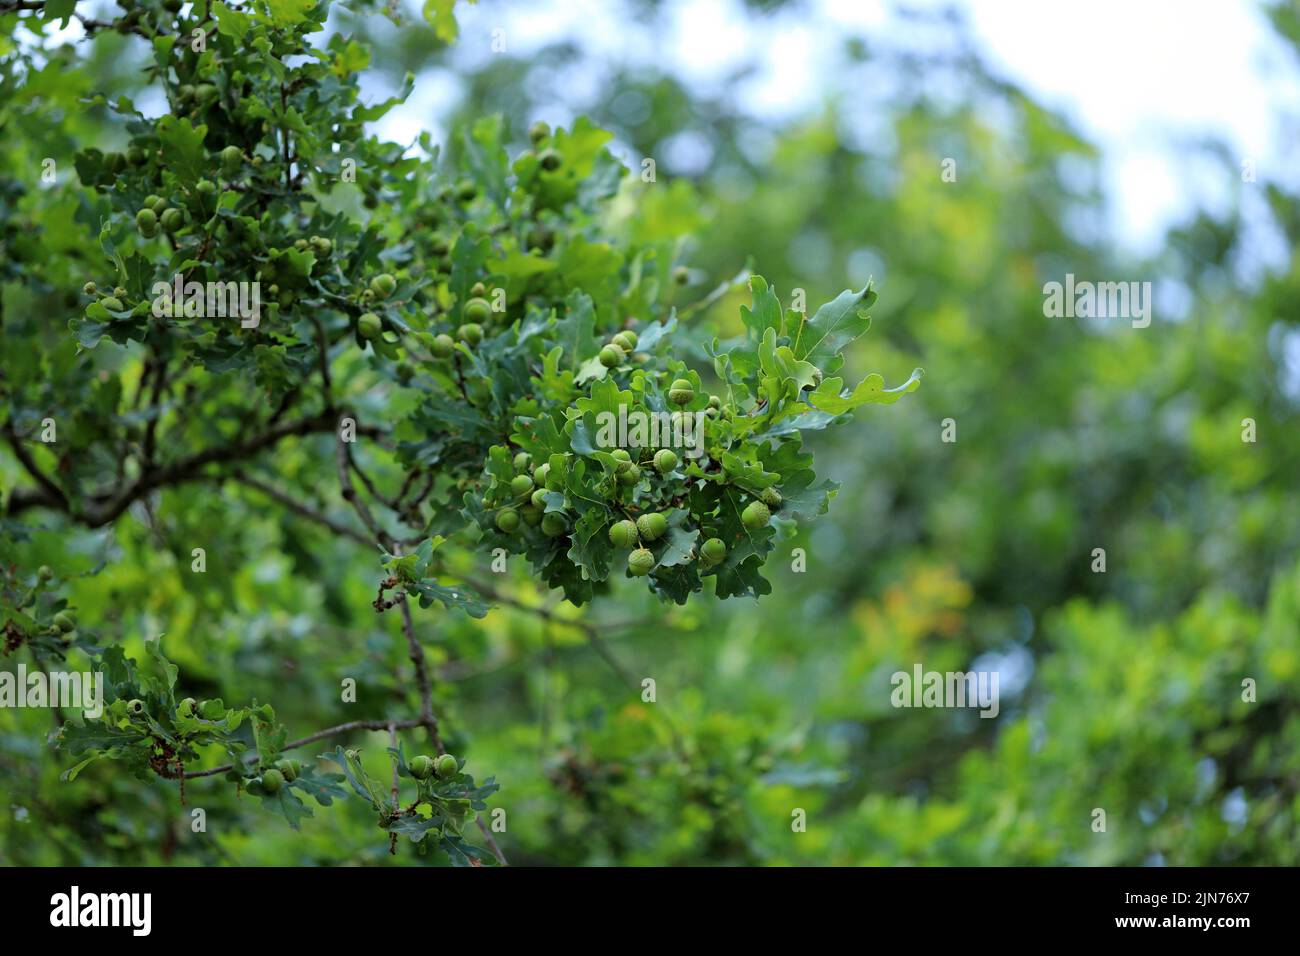 Eicheln auf einem grünen, grünen Zweig einer gemeinsamen Eiche. Stockfoto